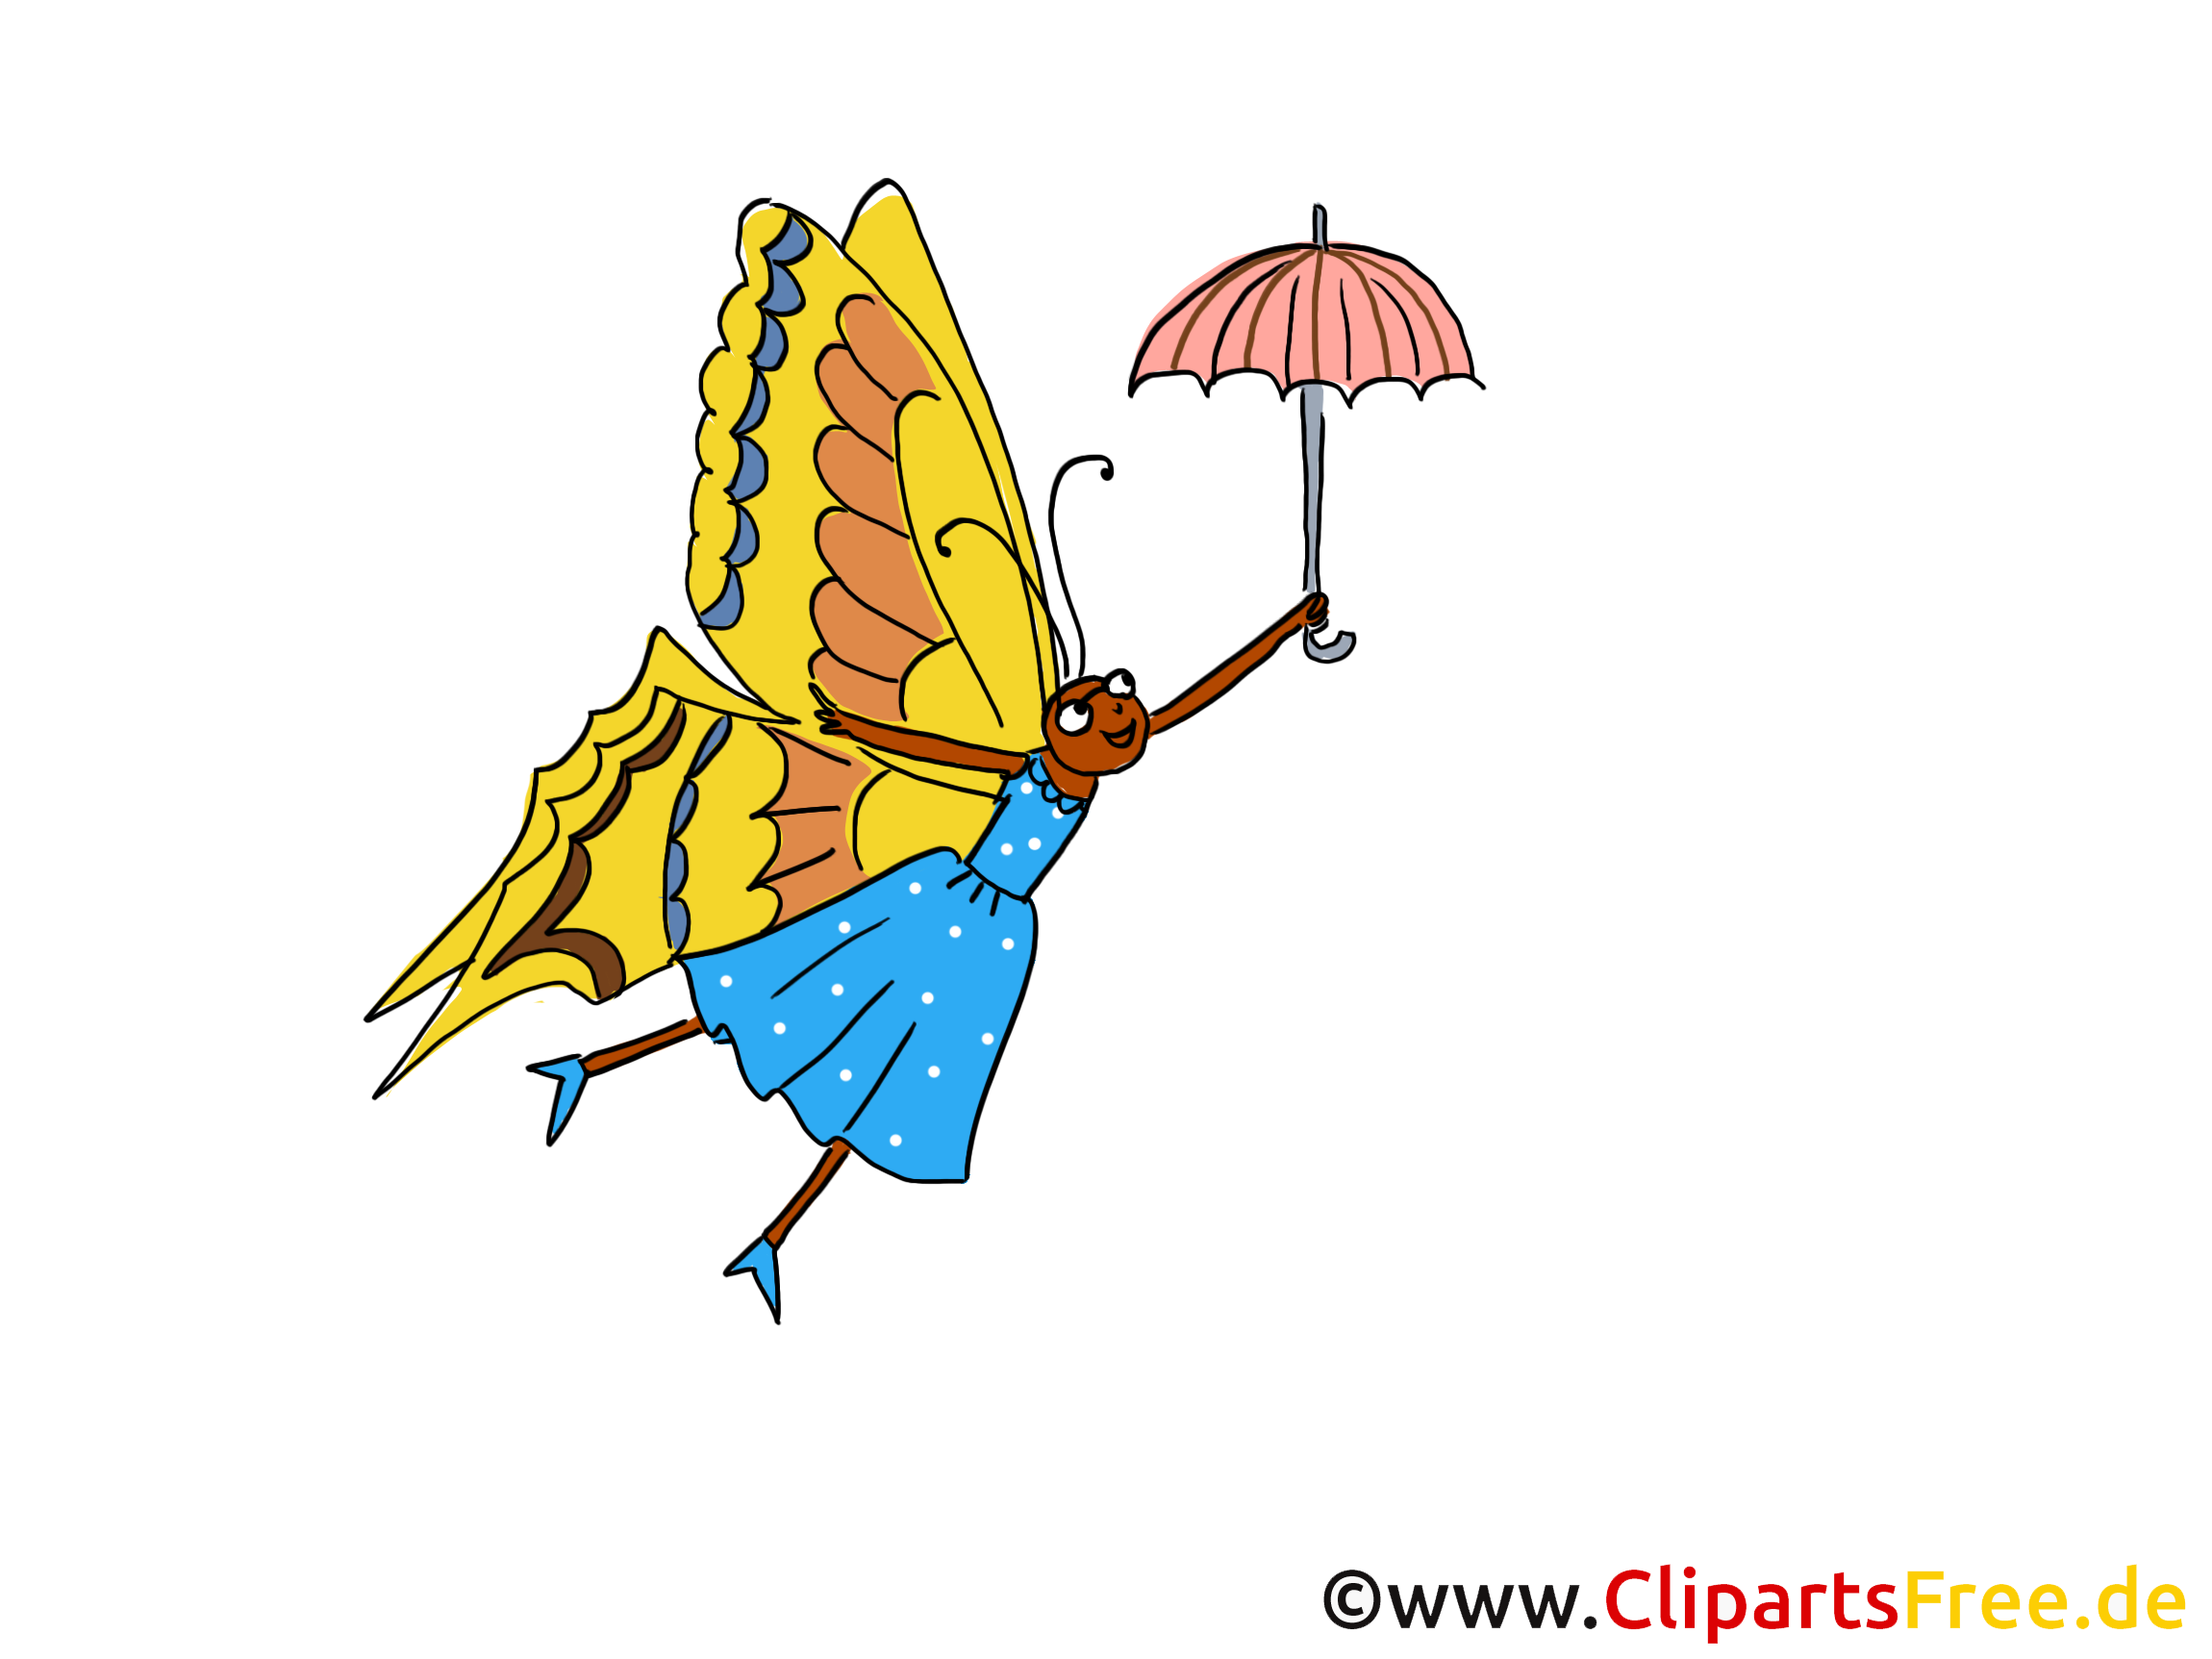 image clipart papillon gratuit - photo #8